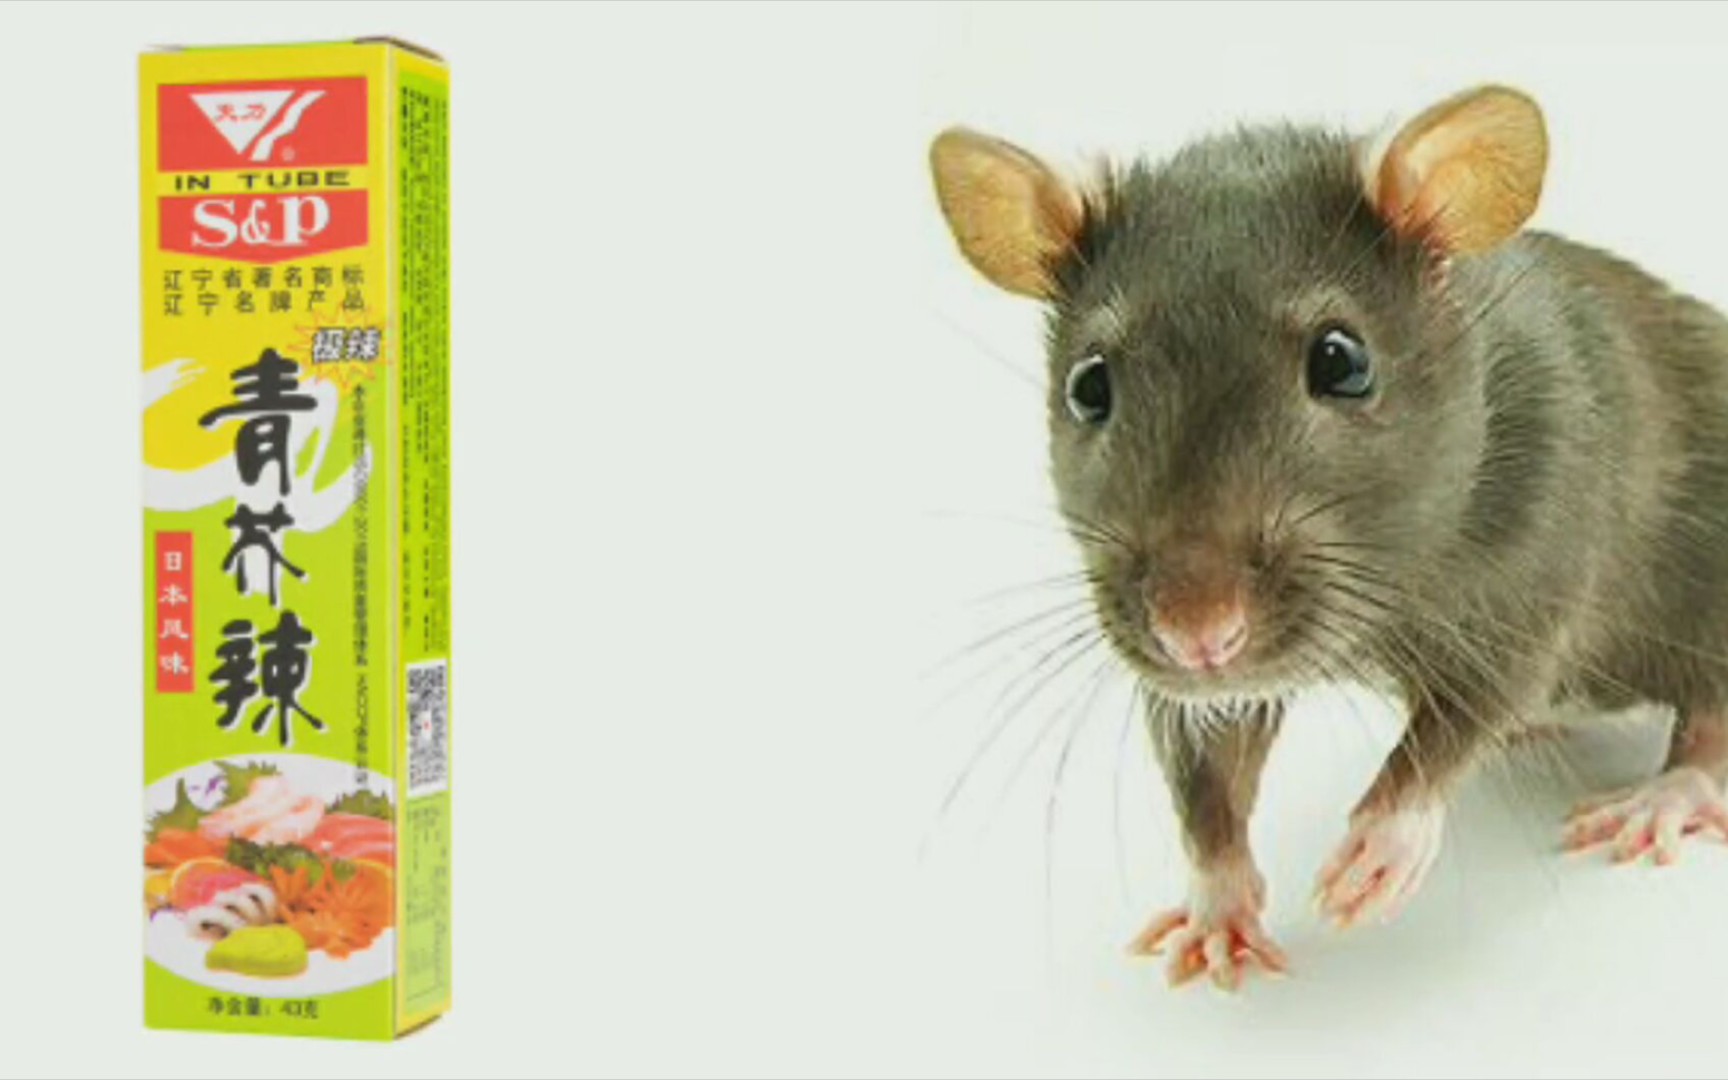 当一只饥饿的老鼠遇到青芥末会发生什么？